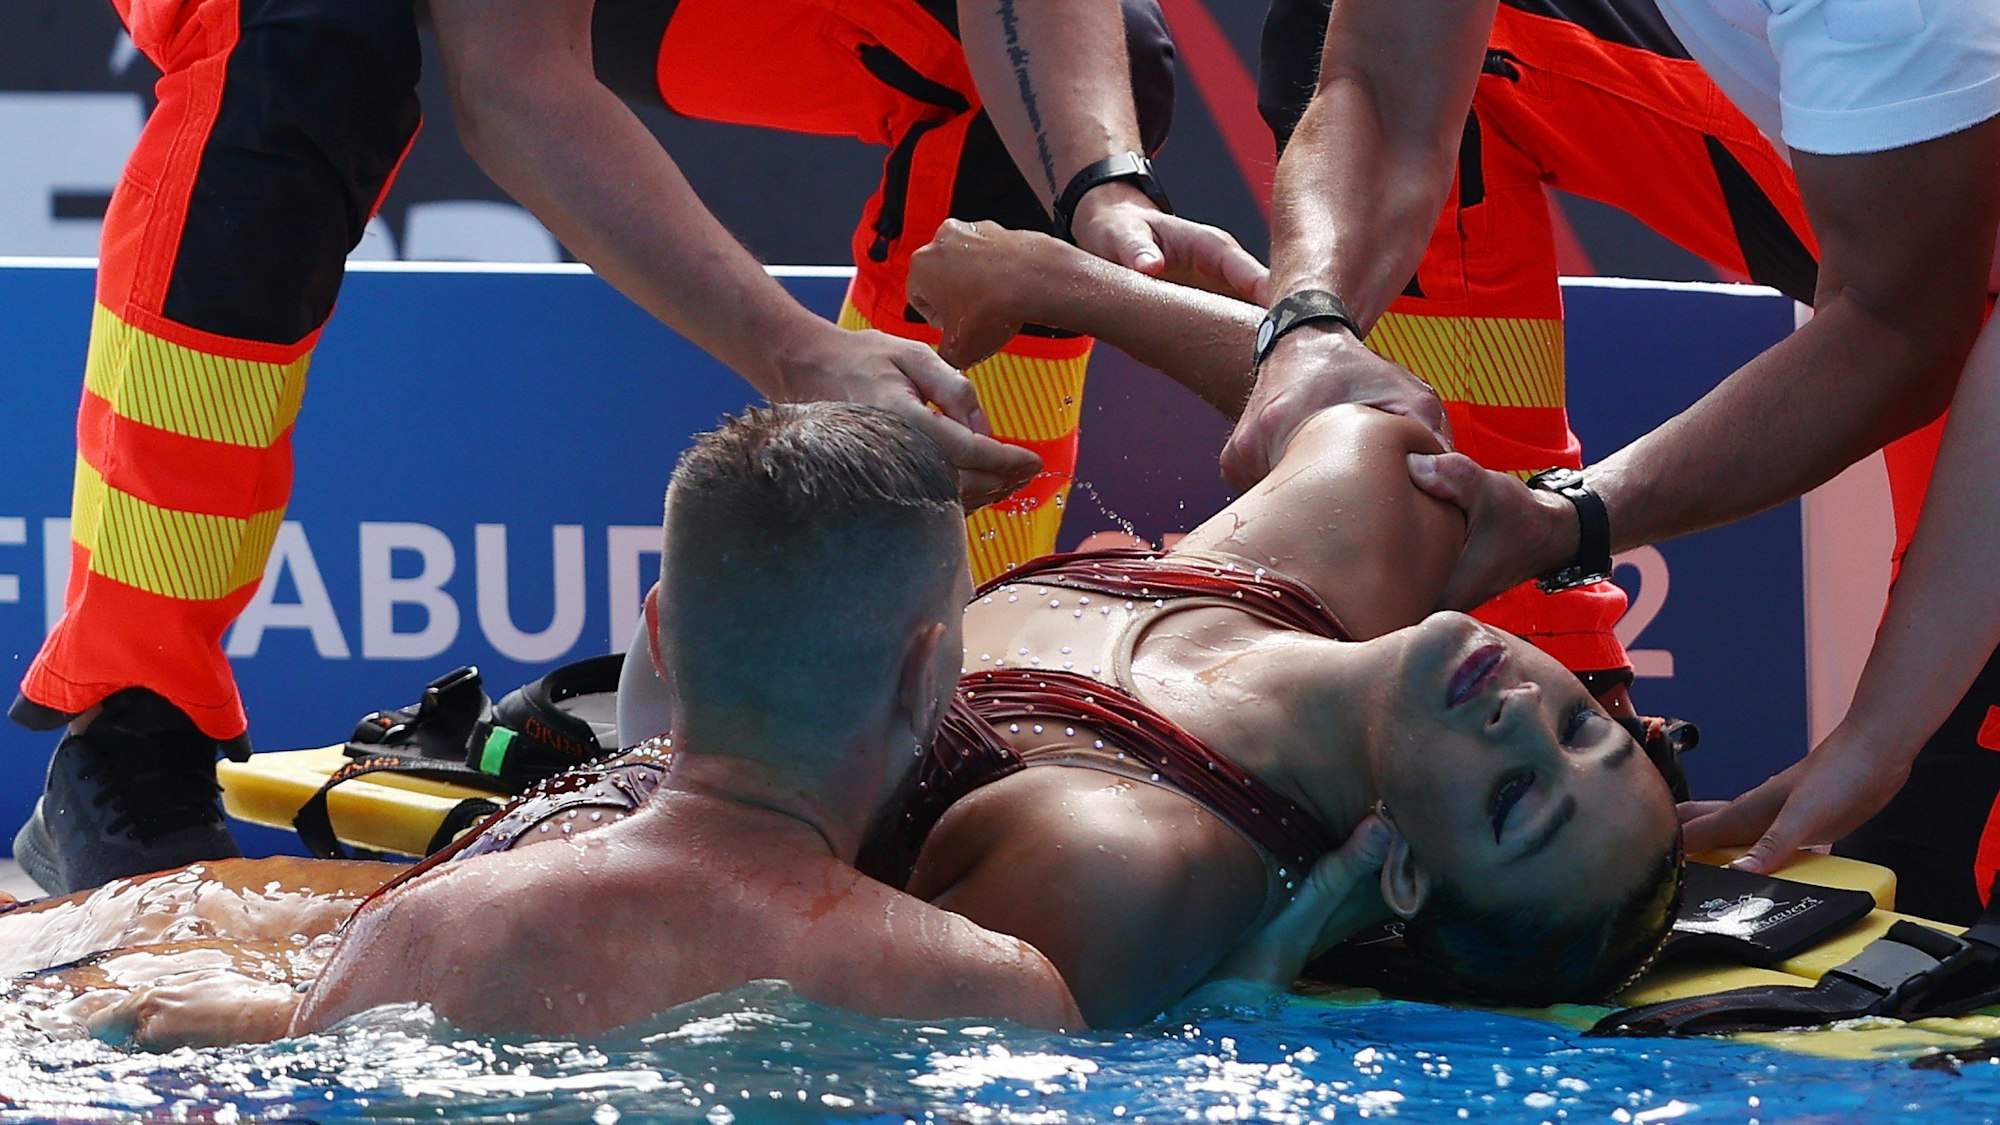 Anita Alvarez wird bei der Schwimm-WM nach der Rettung von Sanitätern aus dem Wasser gezogen und am Beckenrand erstversorgt.